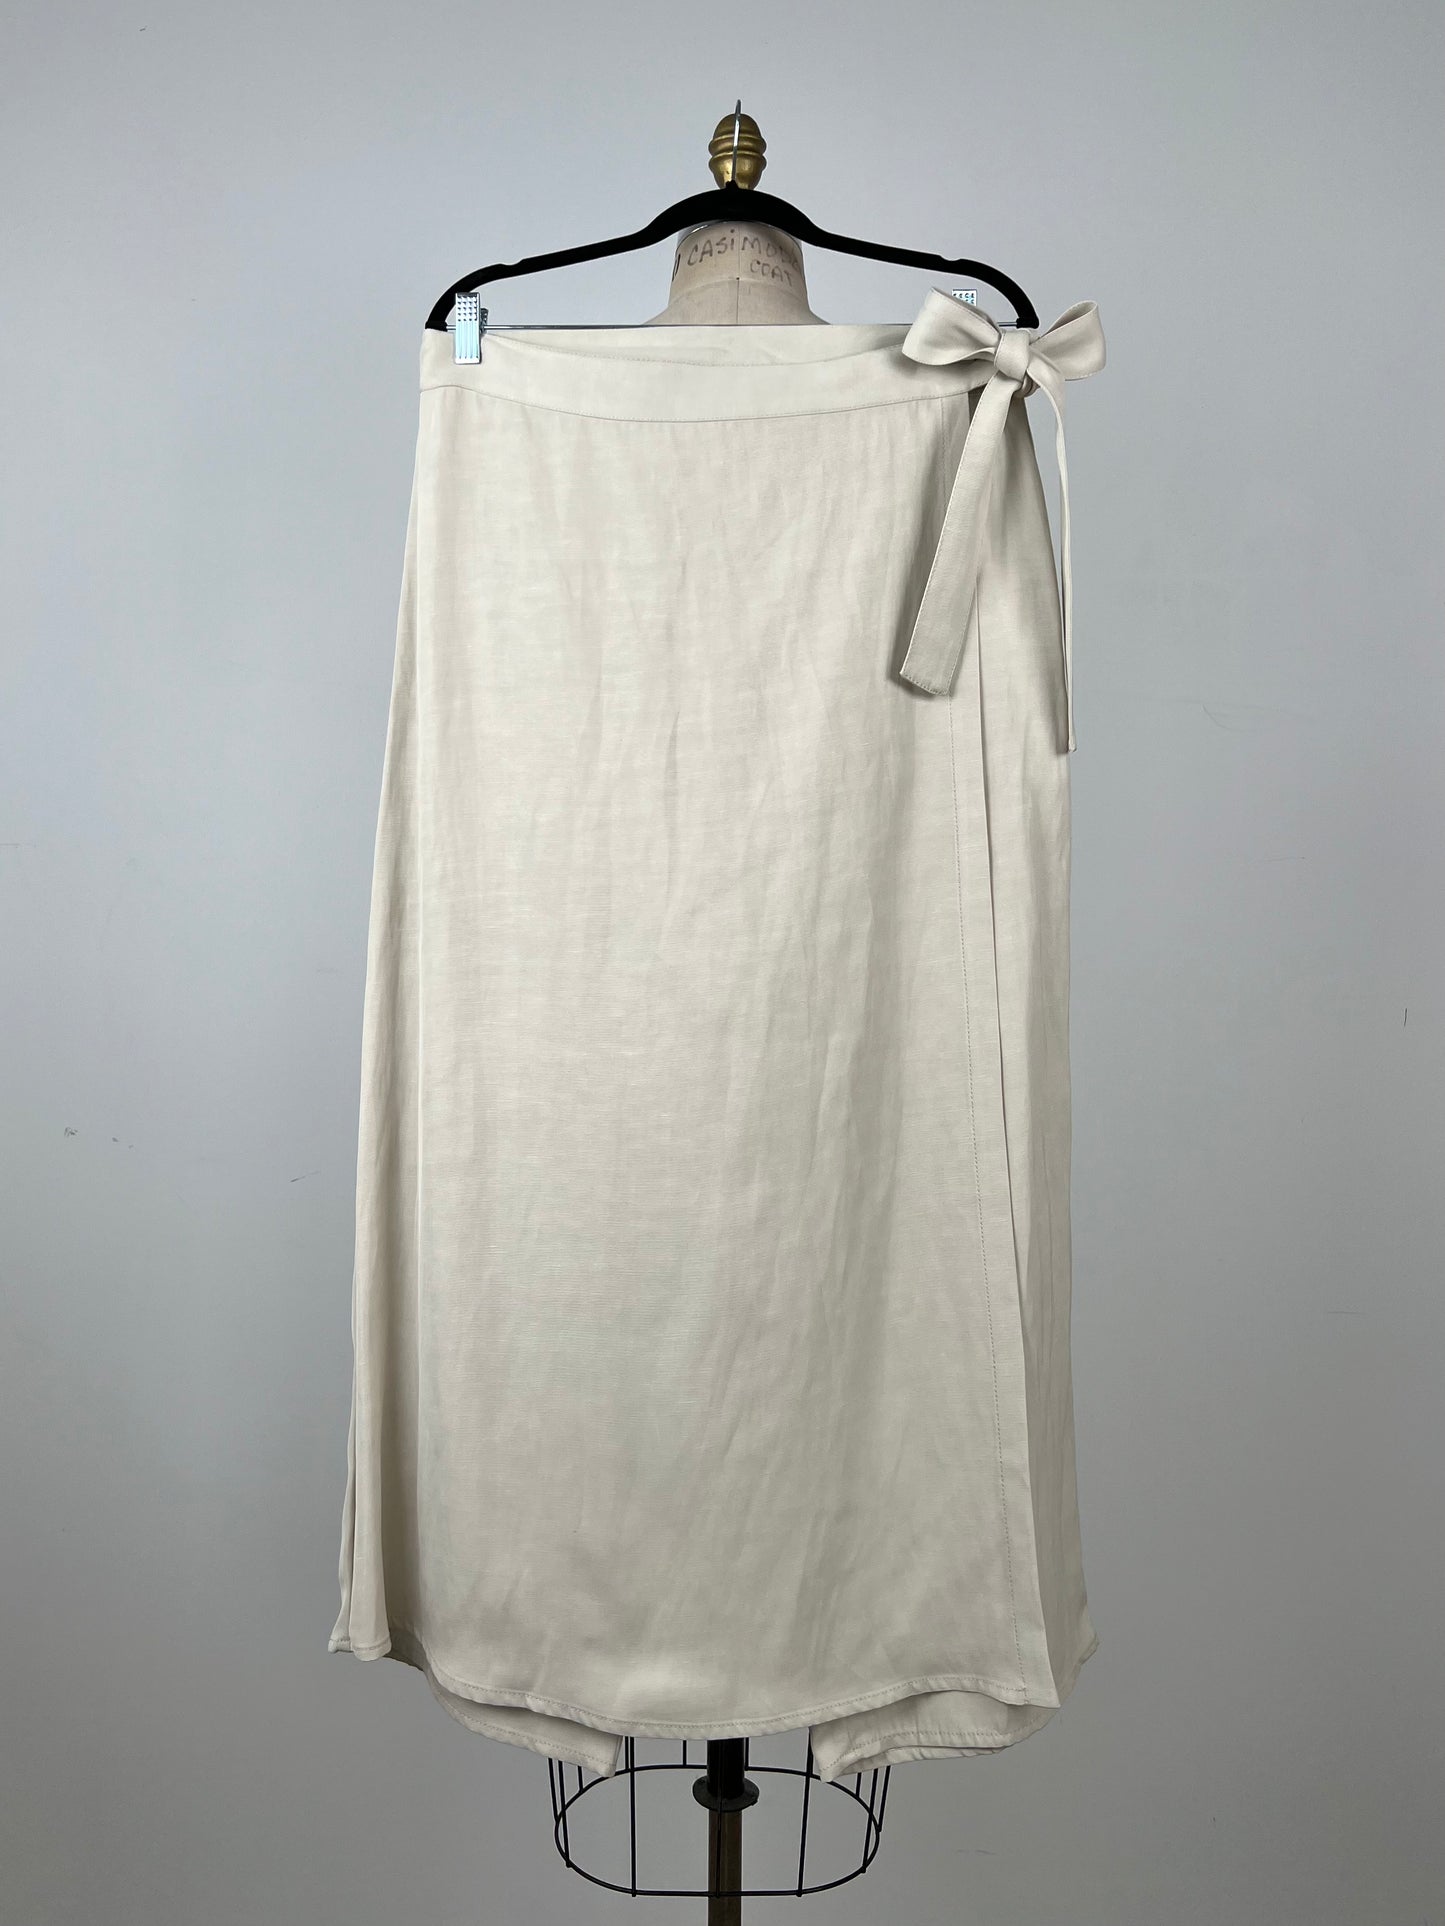 Pantalon écourté à pan de jupe mastic (XL)